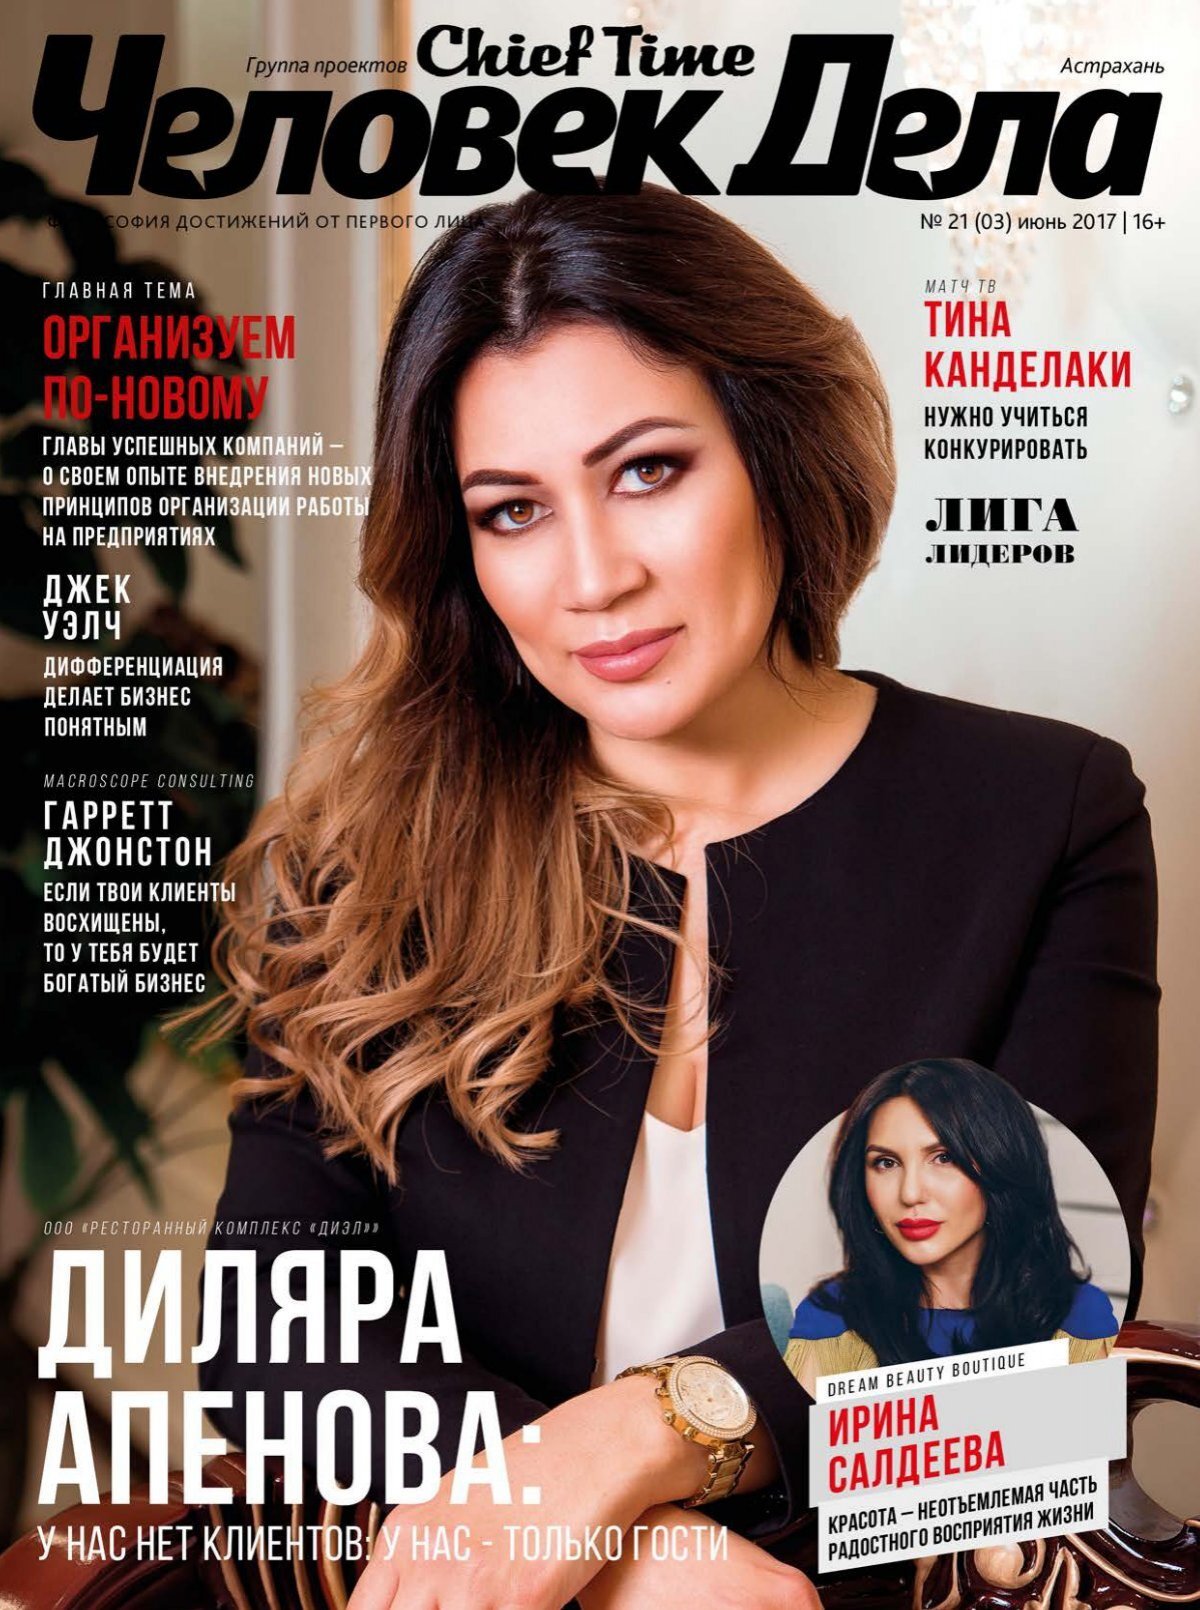 Русская модель ради обложки журнала смогла сесть очком на гигантский хуй редактора